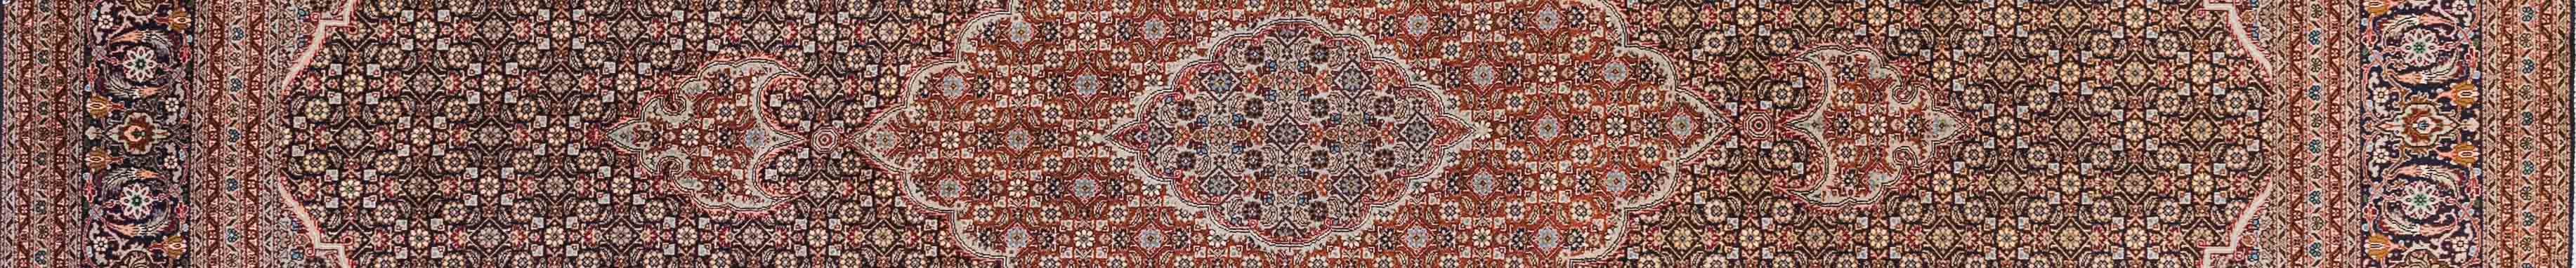 Tabriz Persian Carpet Rug N1Carpet Canada Montreal Tapis Persan 5900